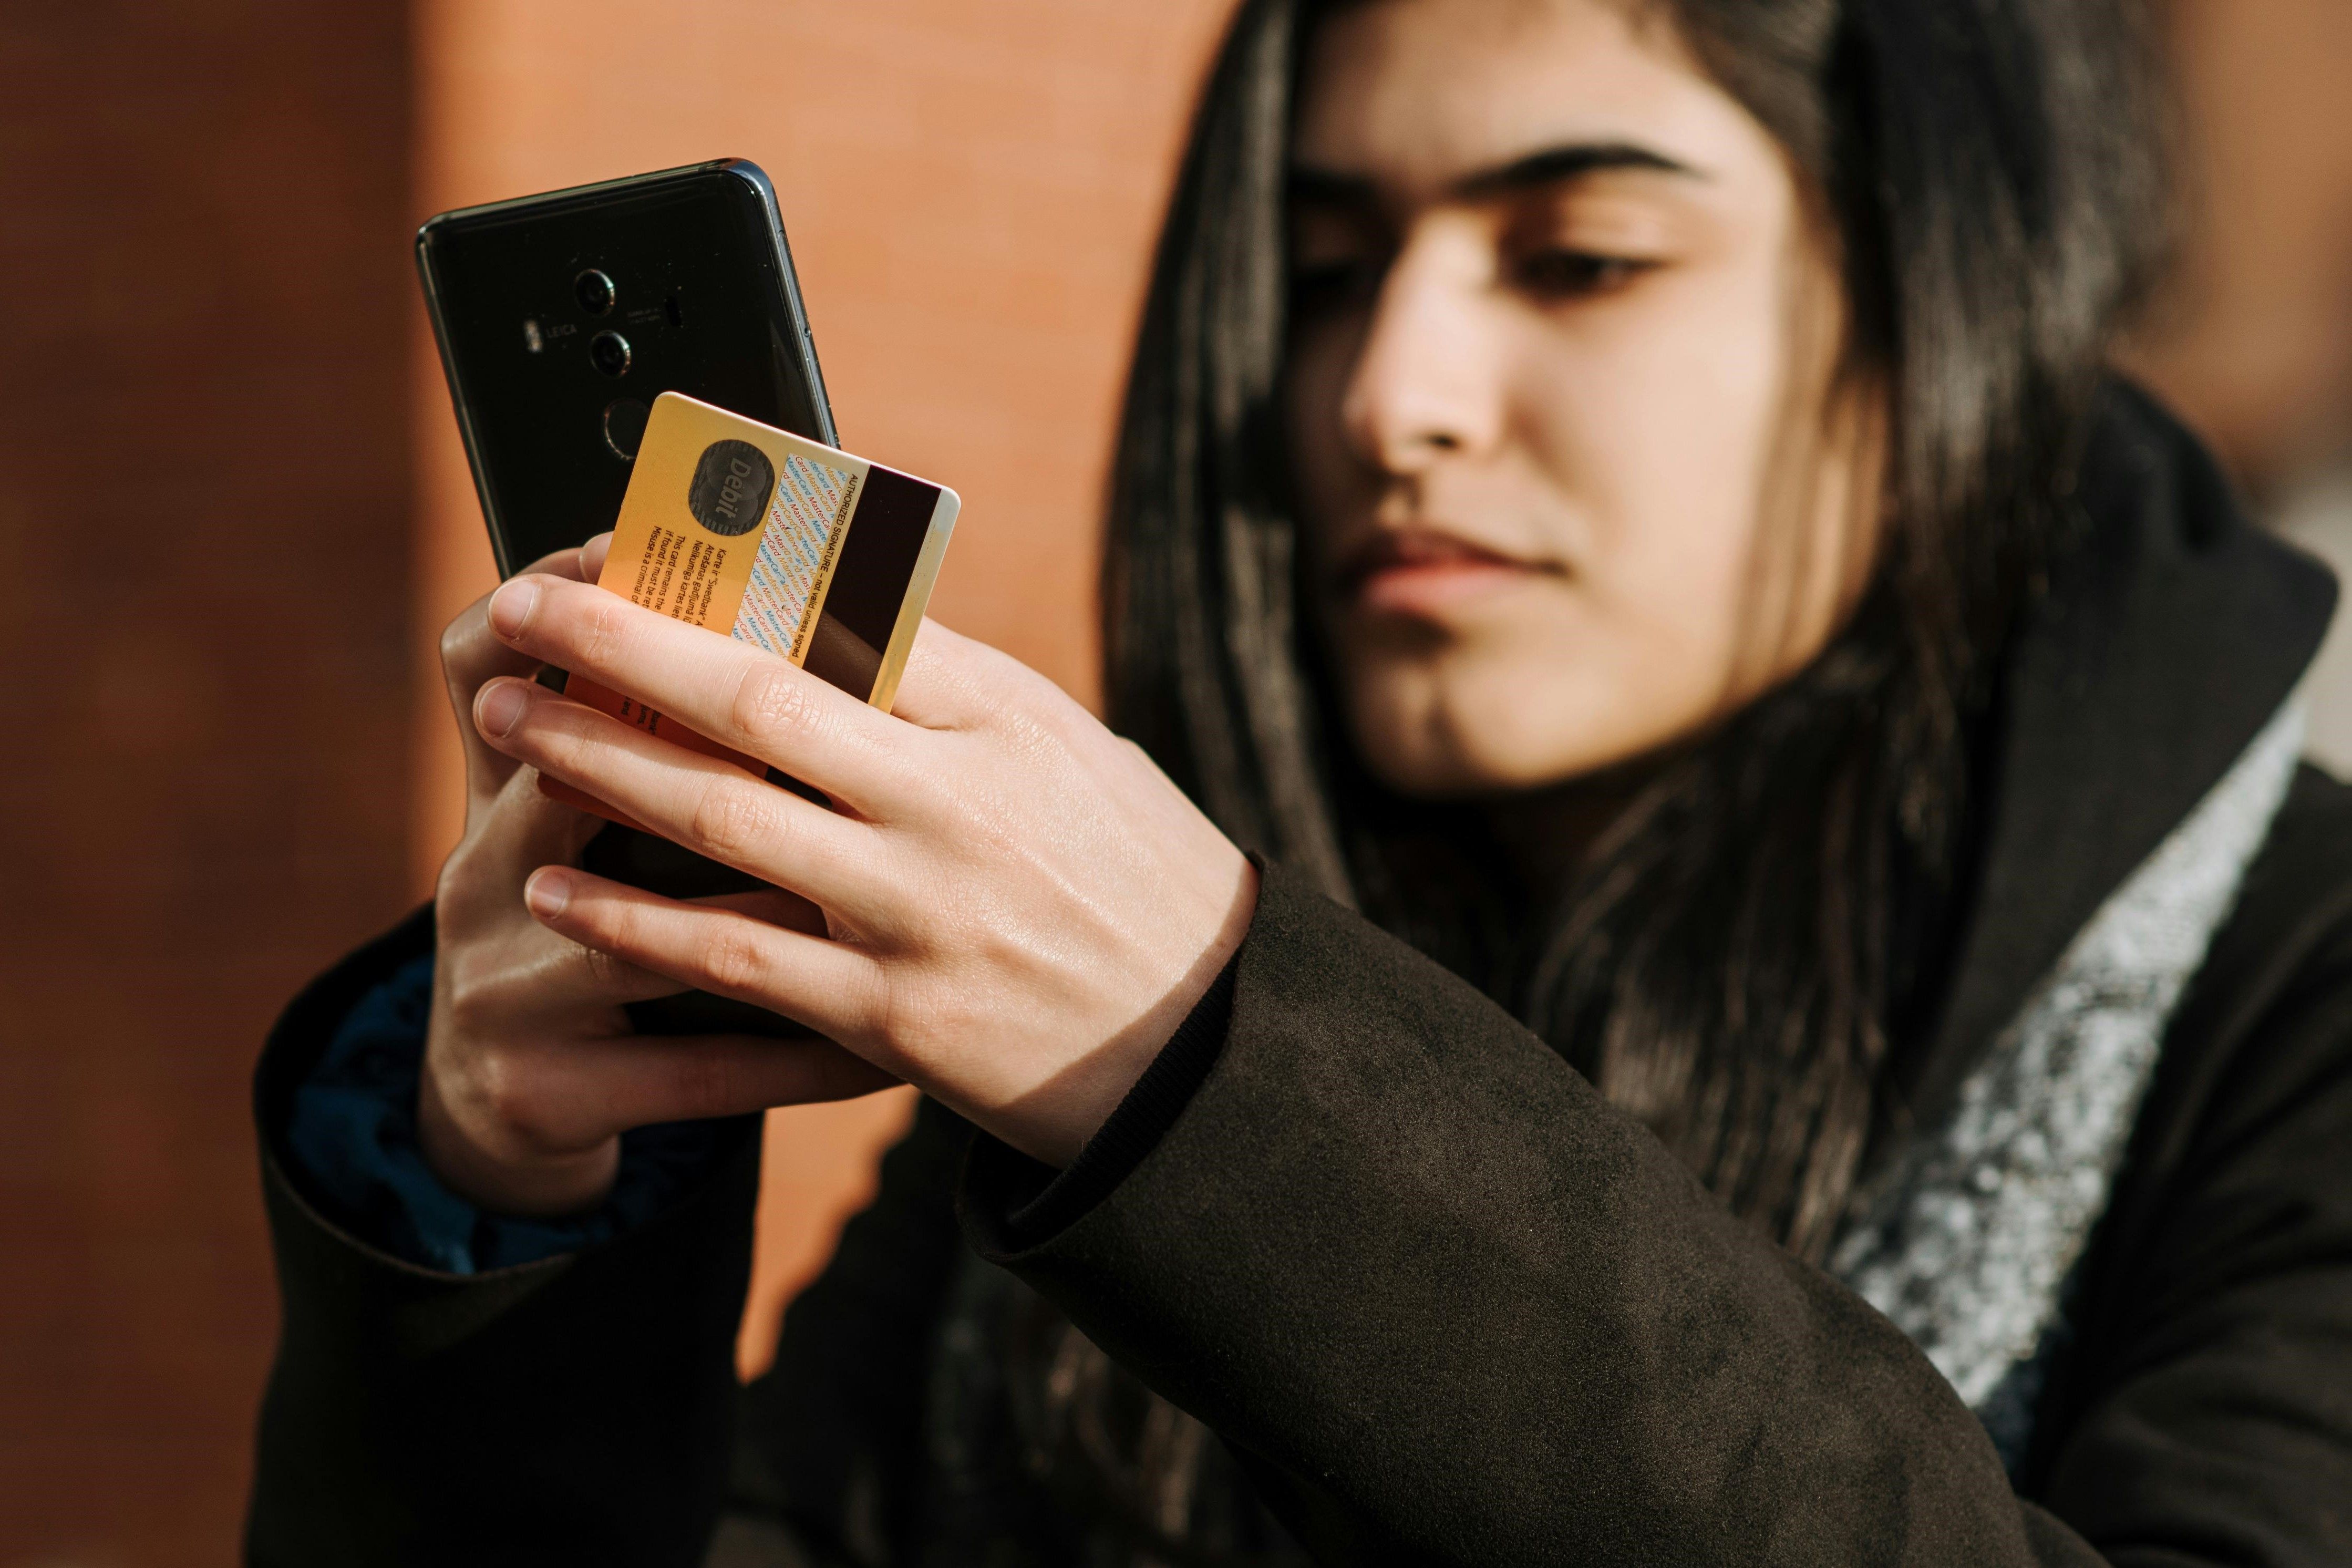 Tenåringsjente ordner noe på mobilen, mens hun holder et bankkort i den andre hånden.